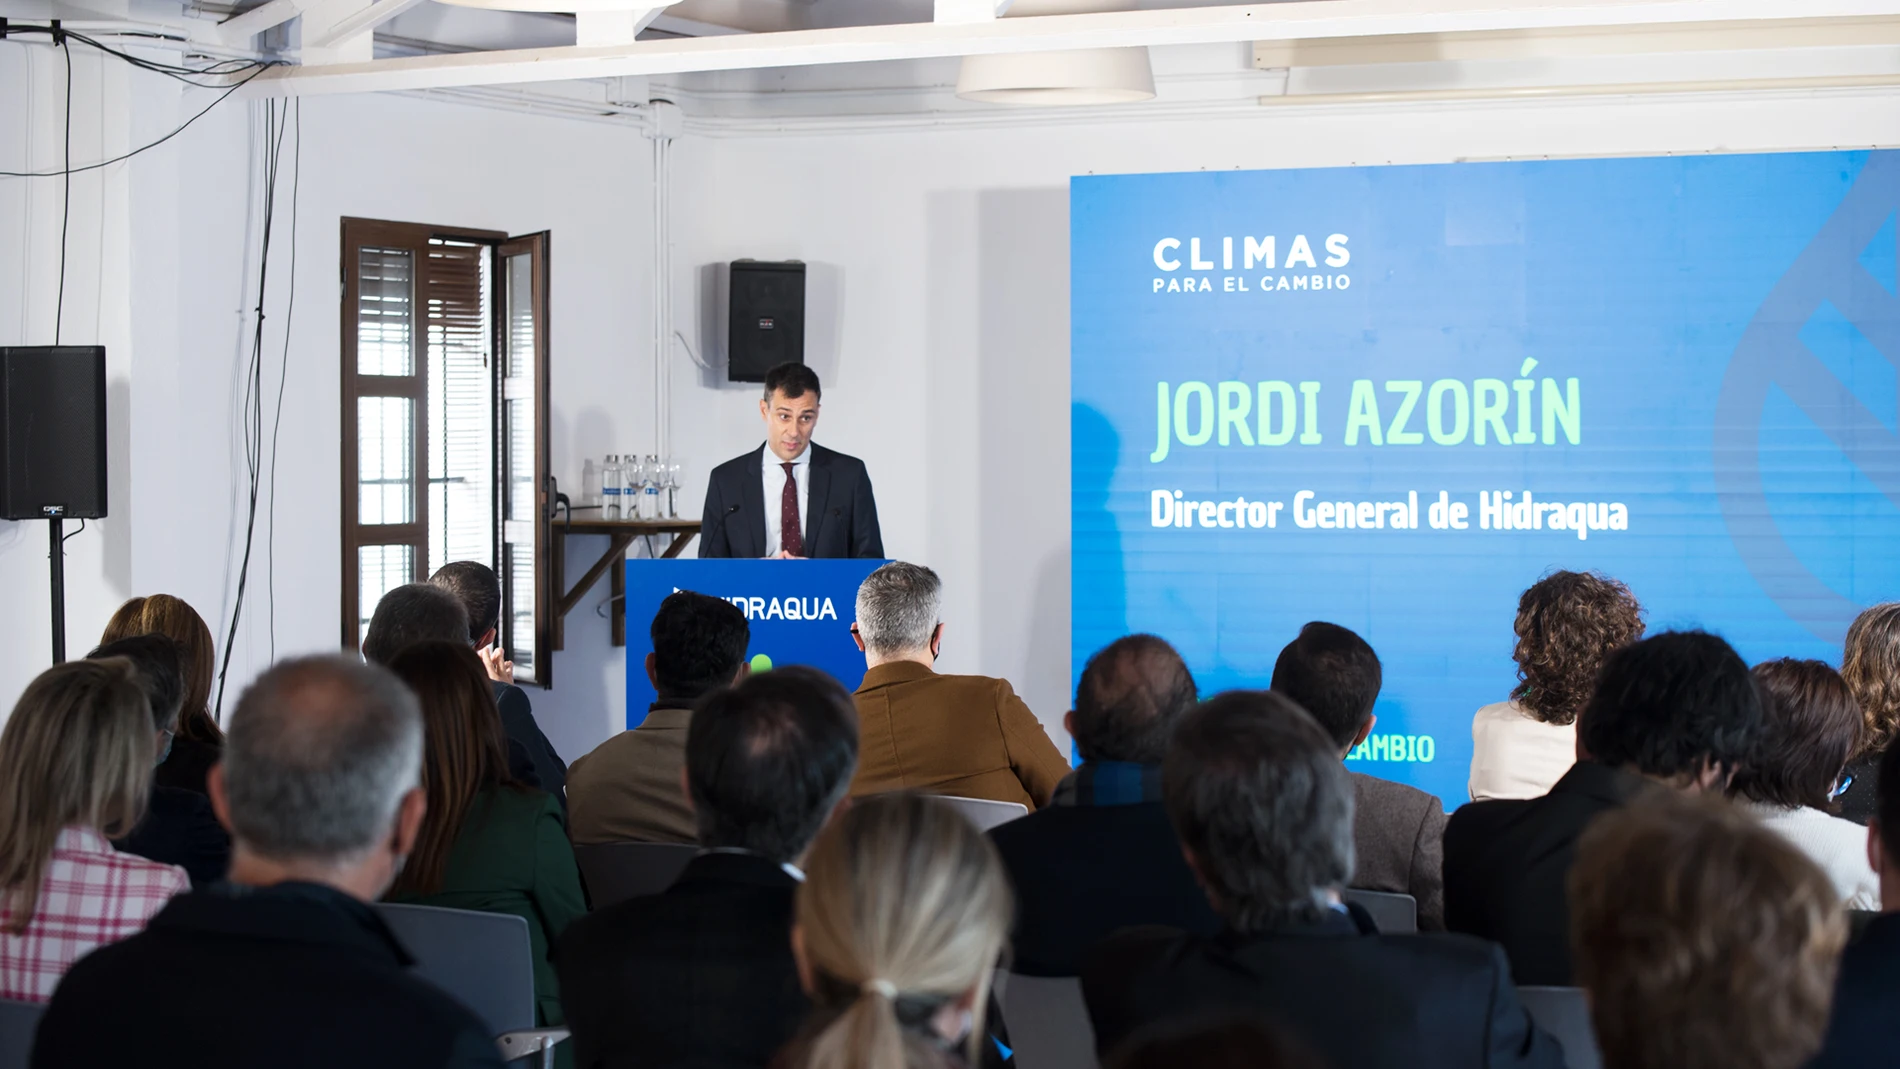 Jordi Azorín, director general de Hidraqua durante la presentación de "Climas para el cambio"